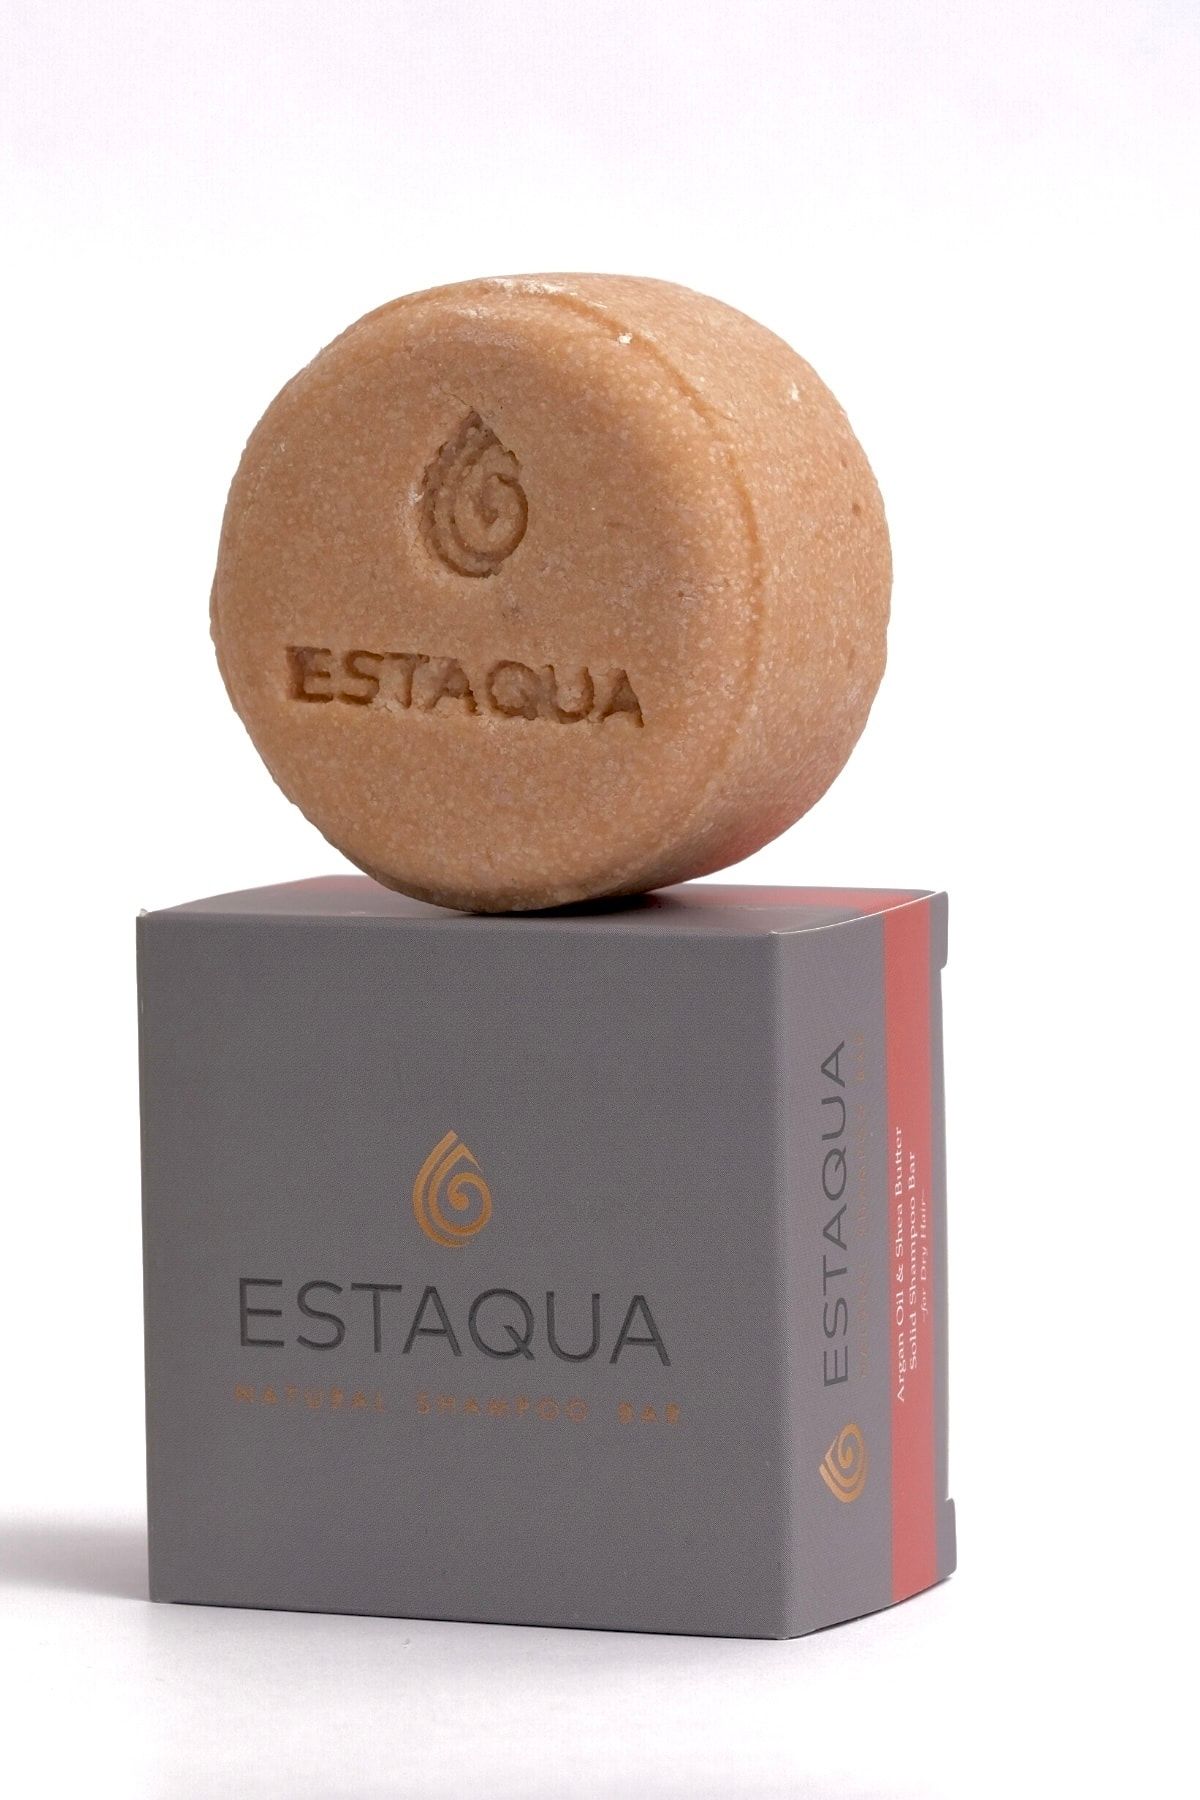 Estaqua Naturel Soaps Onarıcı Bitkisel Keratinli Şampuan- Argan & Shea Yağlı Tuzsuz Katı Şampuan